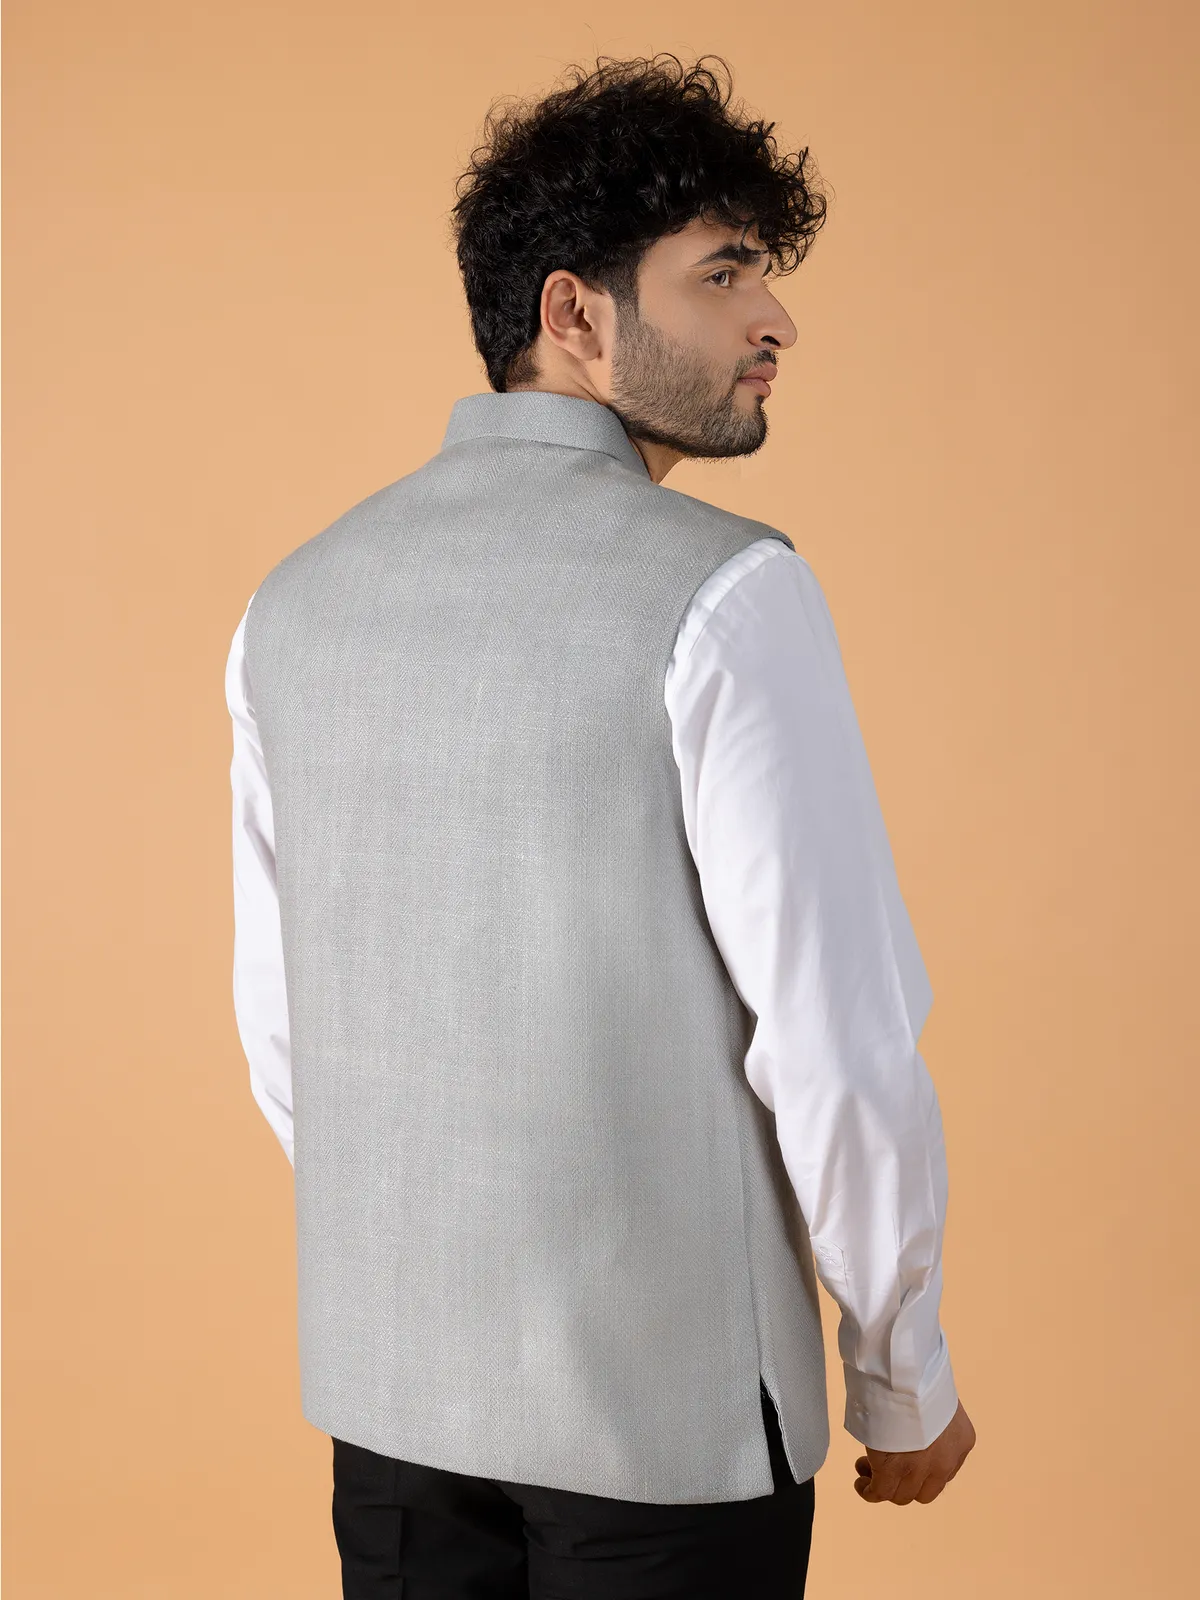 Stunning grey texture waistcoat